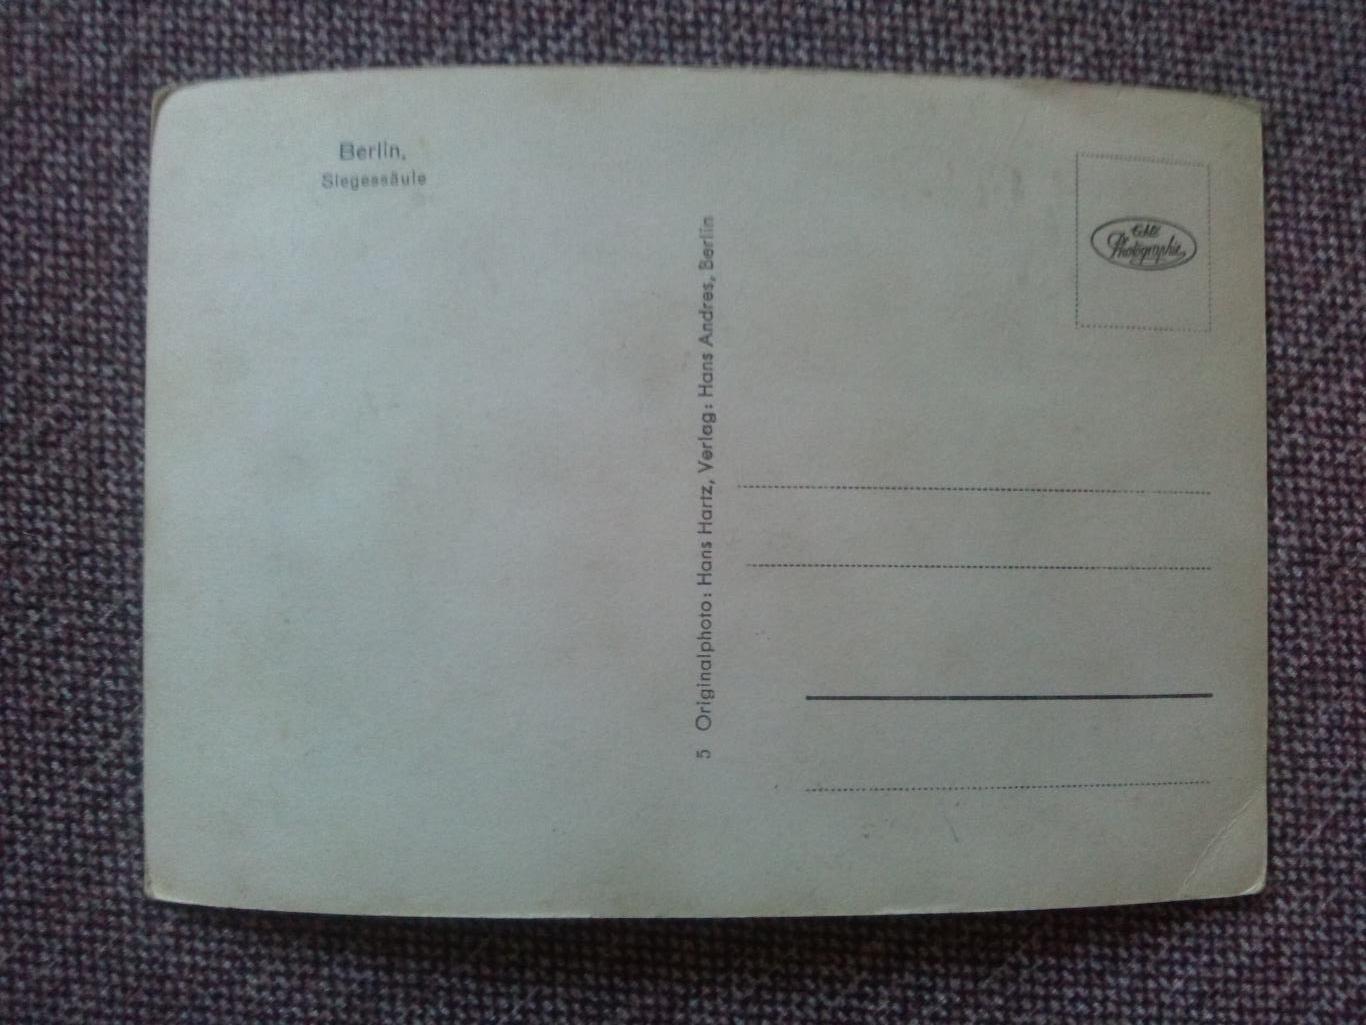 Германия (Germany) - Берлин (Berlin . Slegessaule) 20 - е годы почтовая открытка 1